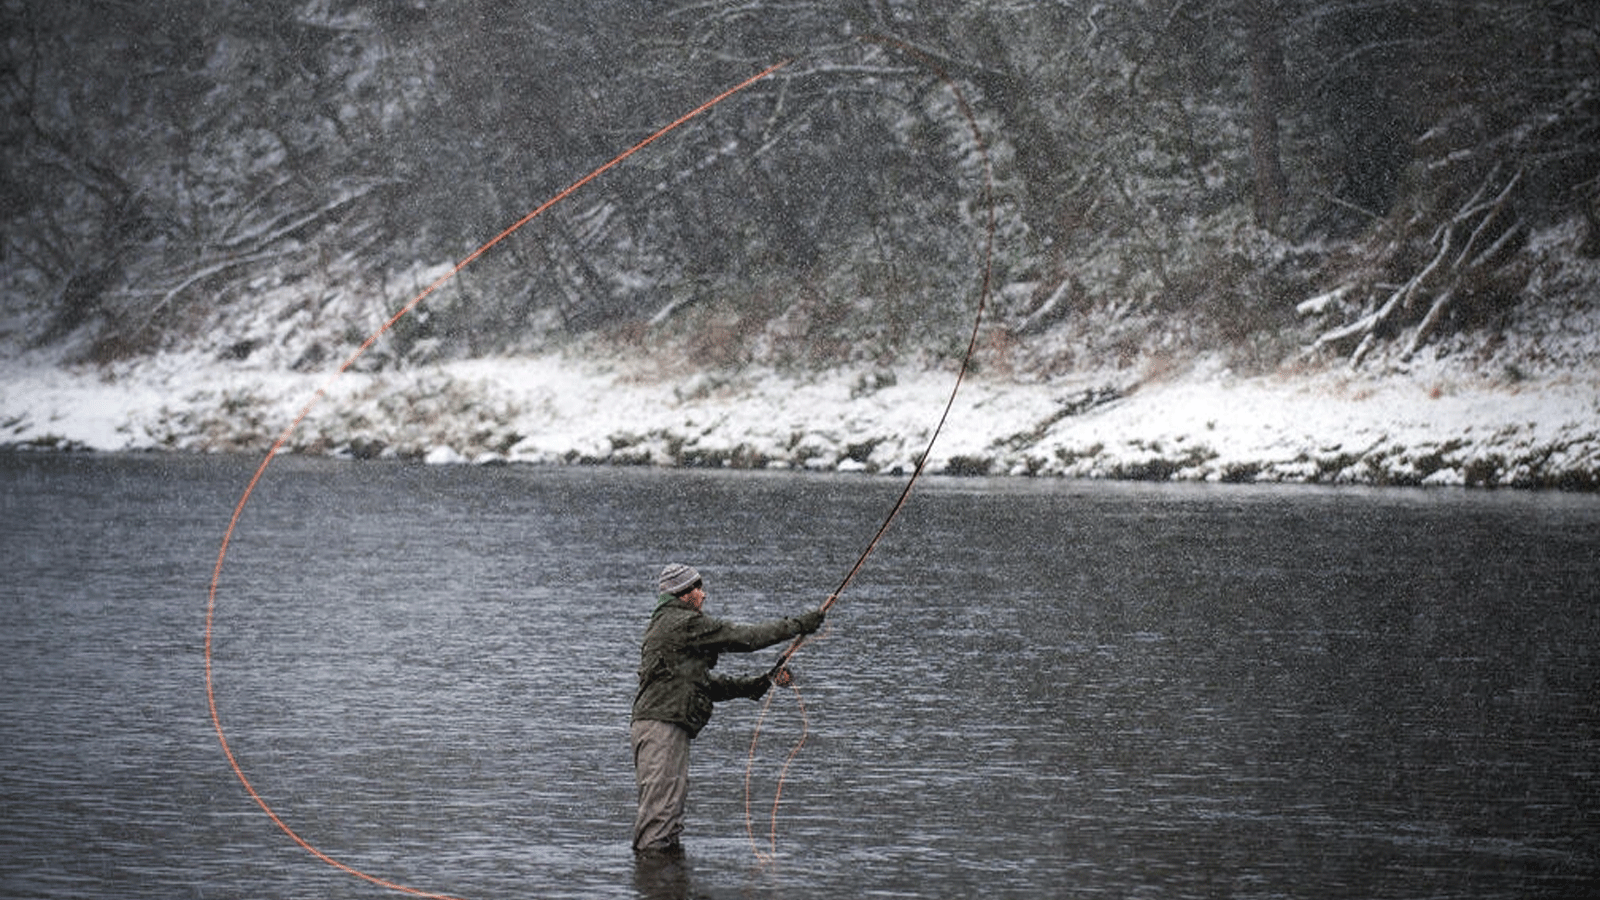  الصيادون على نهر سباي في المرتفعات الاسكتلندية يشتكون انخفاض أعداد سمك السلمون